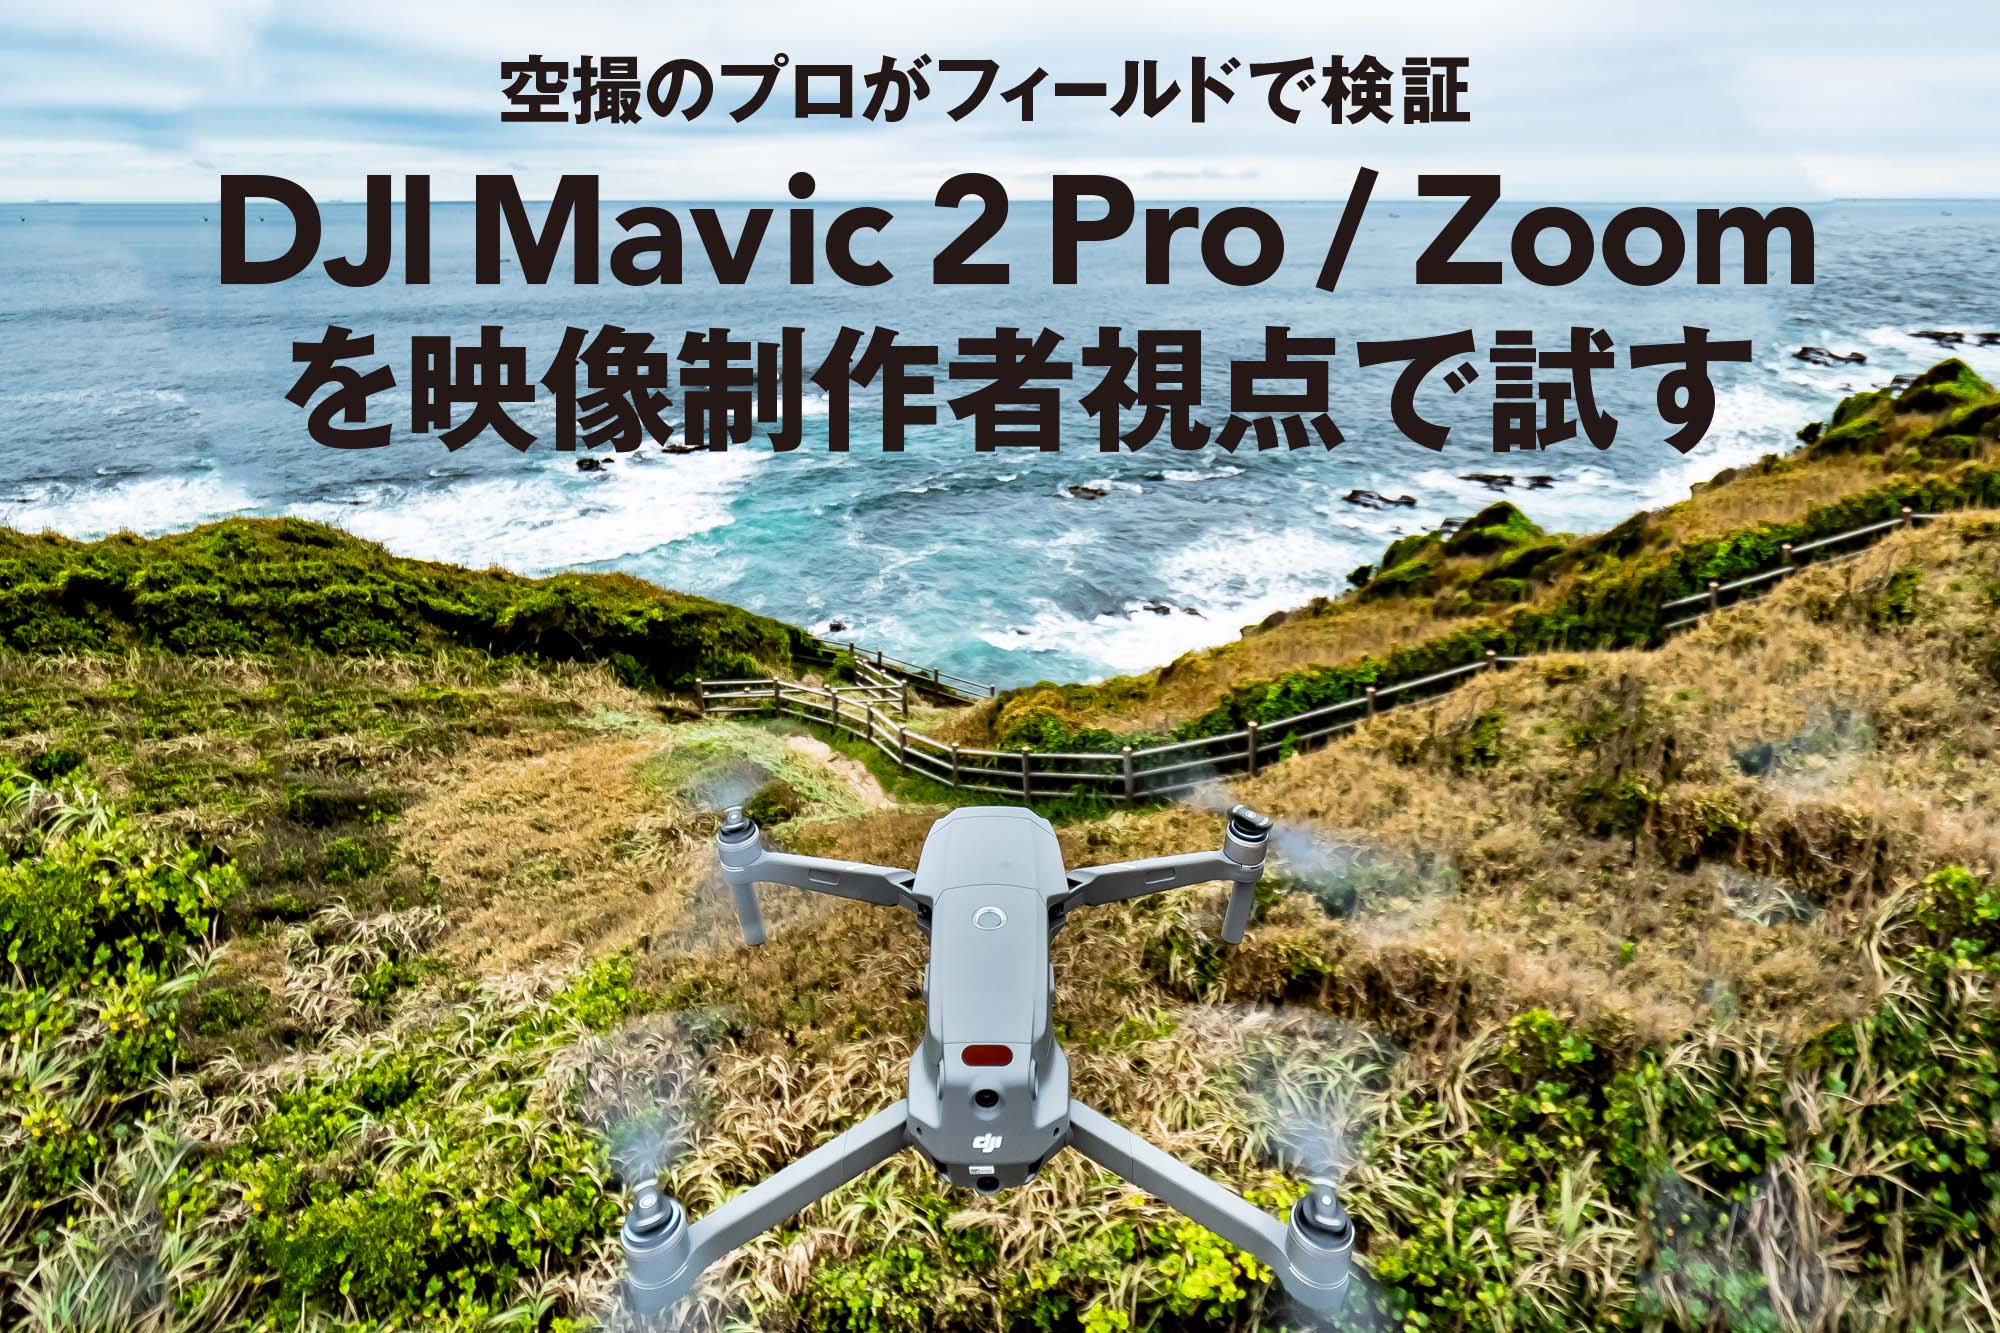 空撮のプロがフィールドで検証 DJI Mavic 2 Pro / Zoom を映像制作者